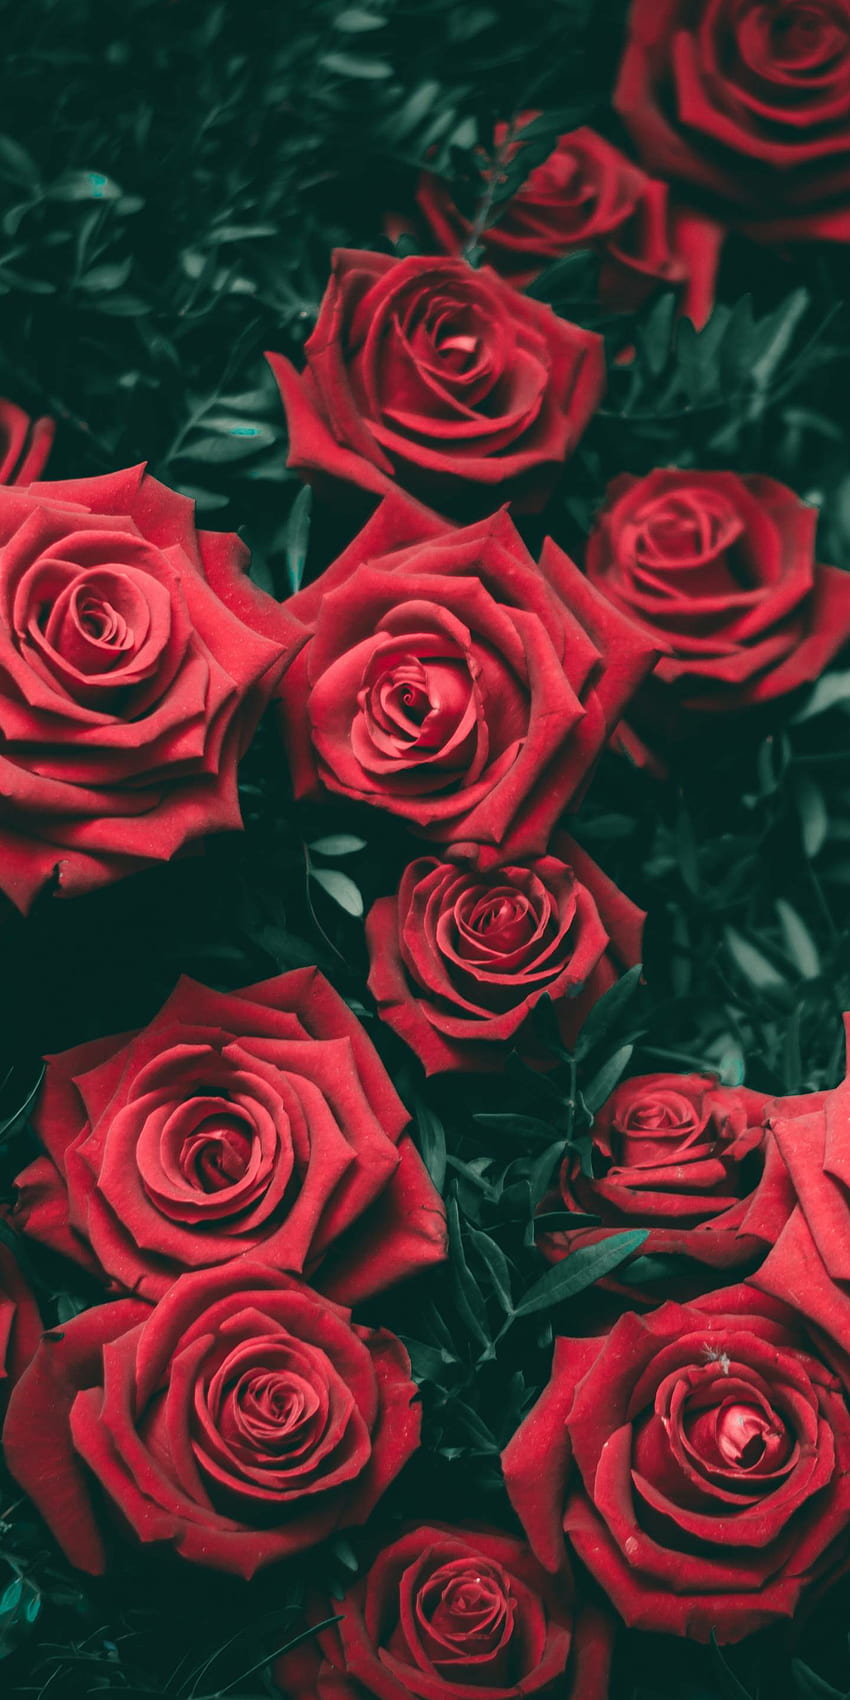 Hồng đỏ tươi esthetic, hình nền điện thoại HD với hoa hồng đỏ: Với những hình nền điện thoại HD đầy esthetic và hoa hồng đỏ tươi sáng, bạn sẽ có được một màn hình đa sắc màu để giúp sáng tạo và tinh tế hơn. Hãy ngắm nhìn những bông hồng đầy sức sống và cảm nhận sự thanh thoát trong từng nét vẽ trên màn hình điện thoại của bạn.